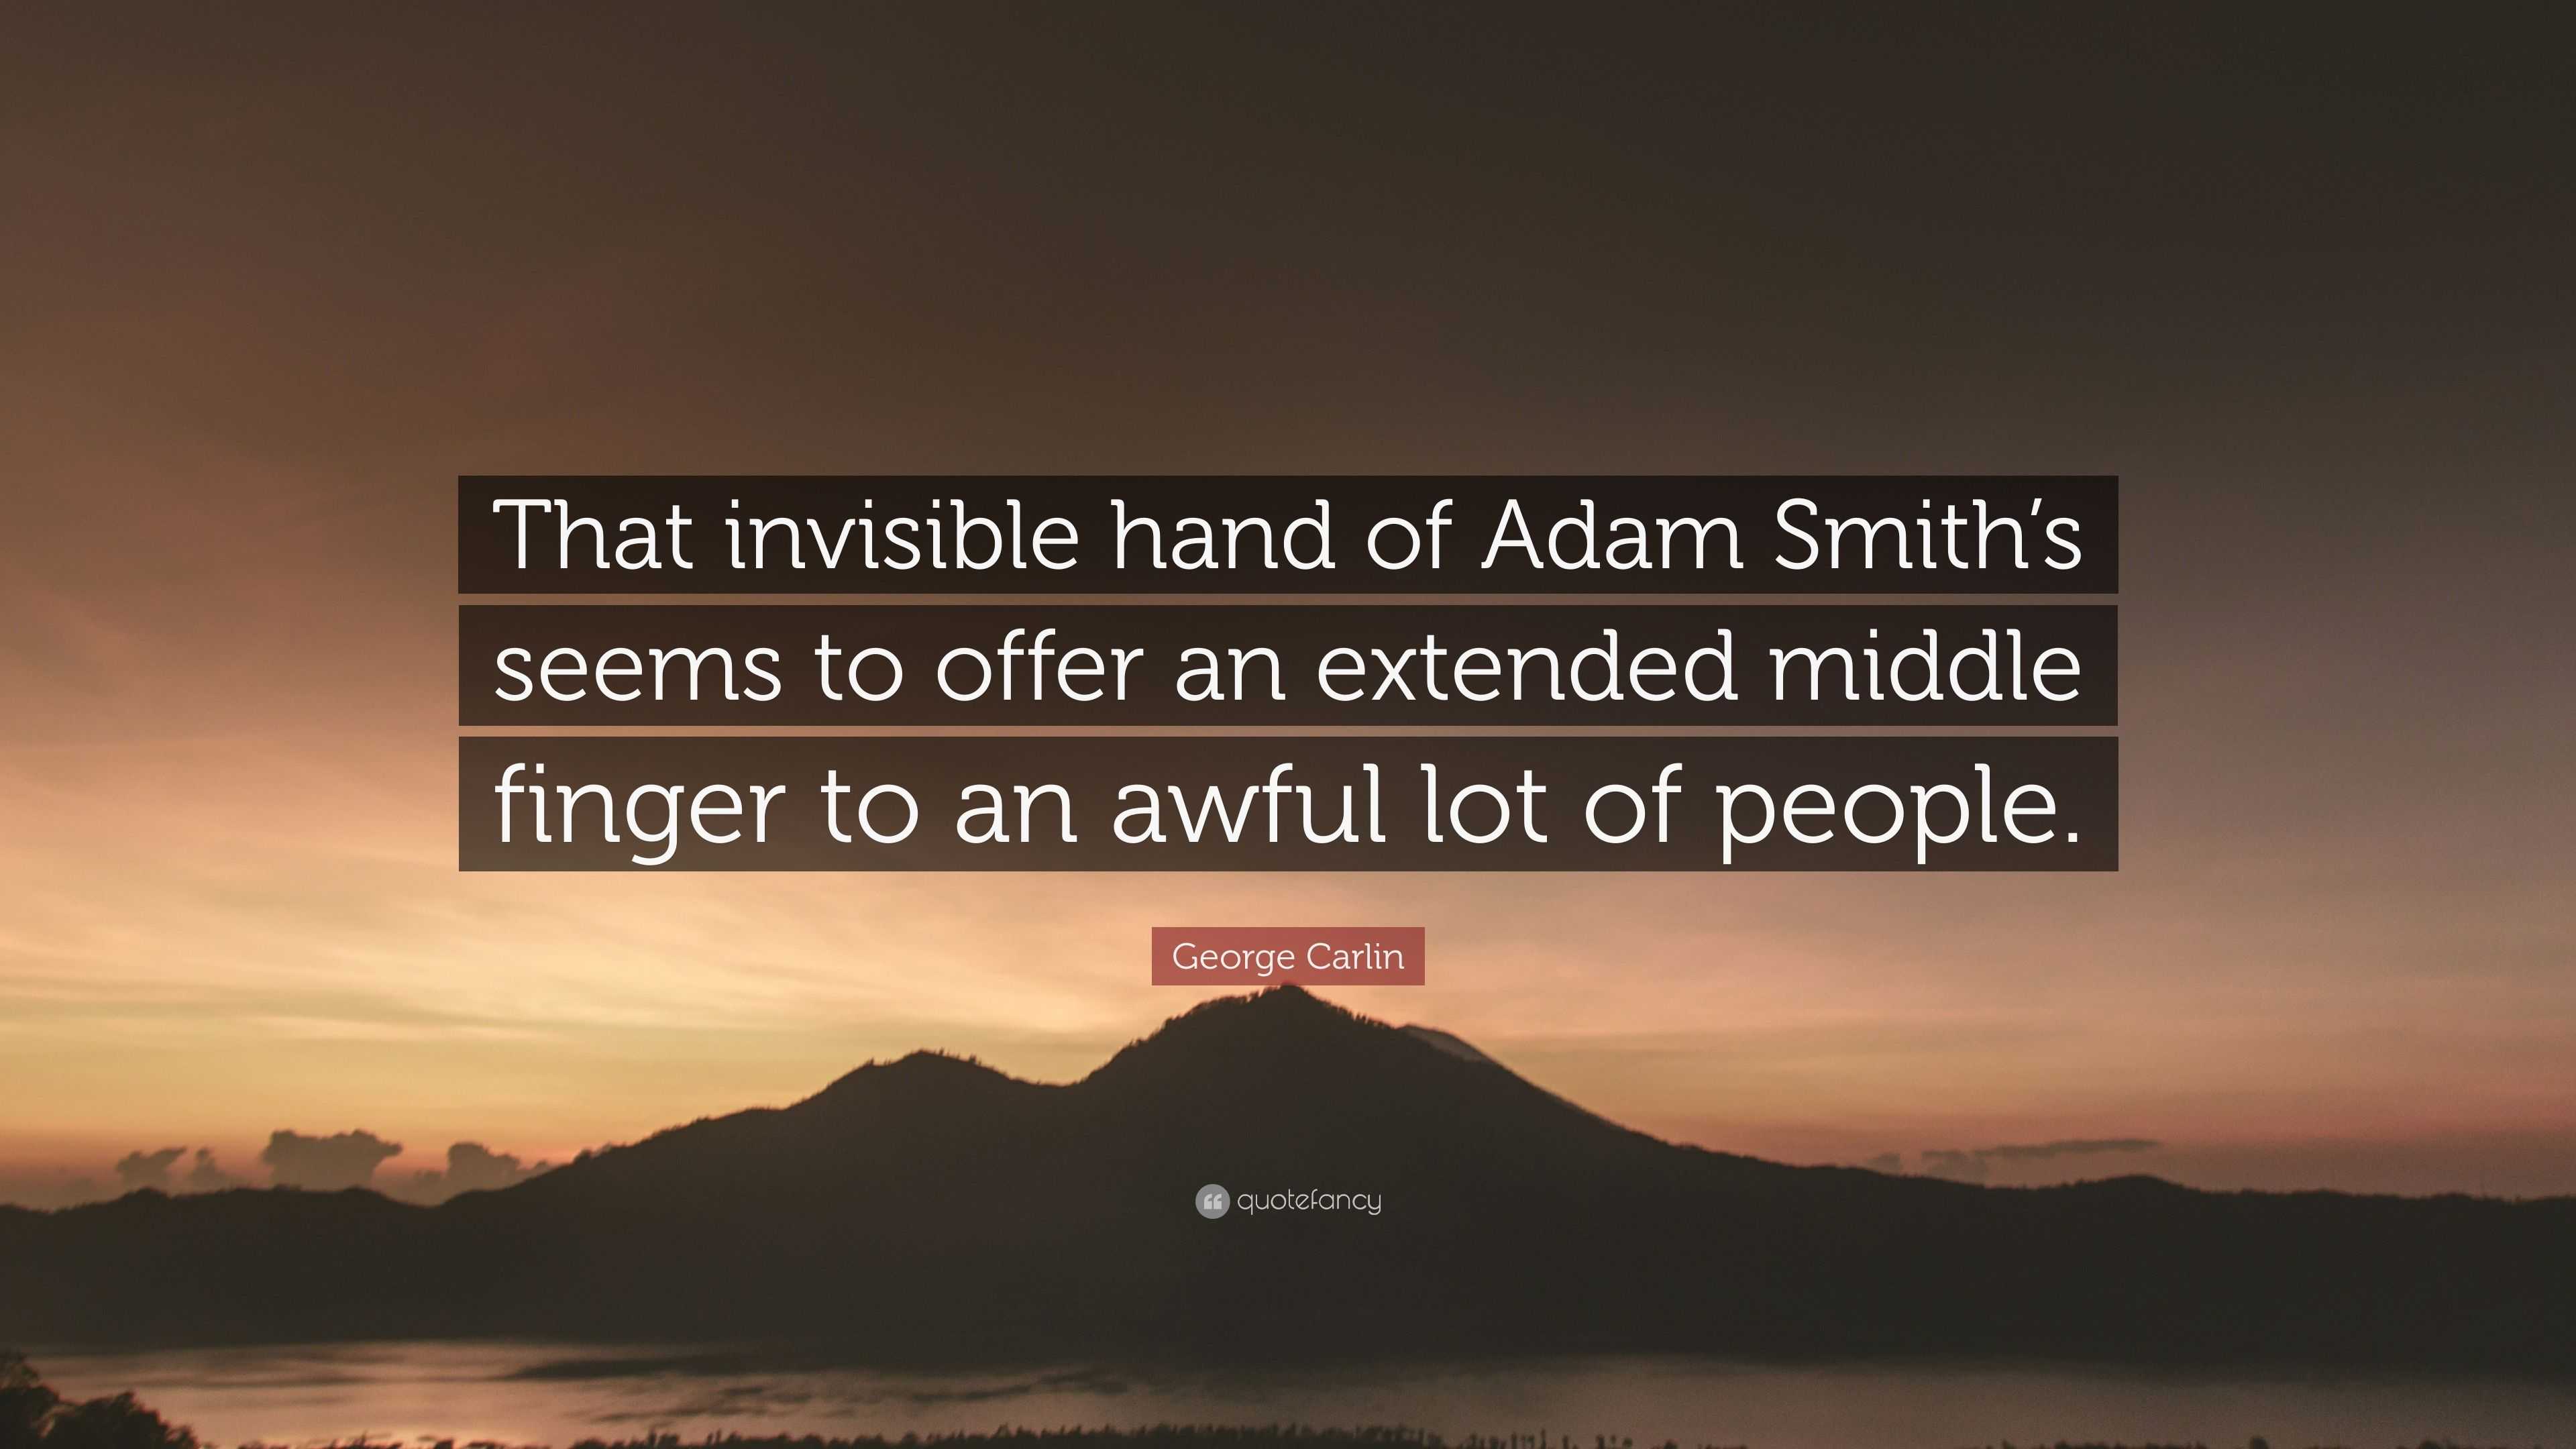 adam smith invisible hand represents